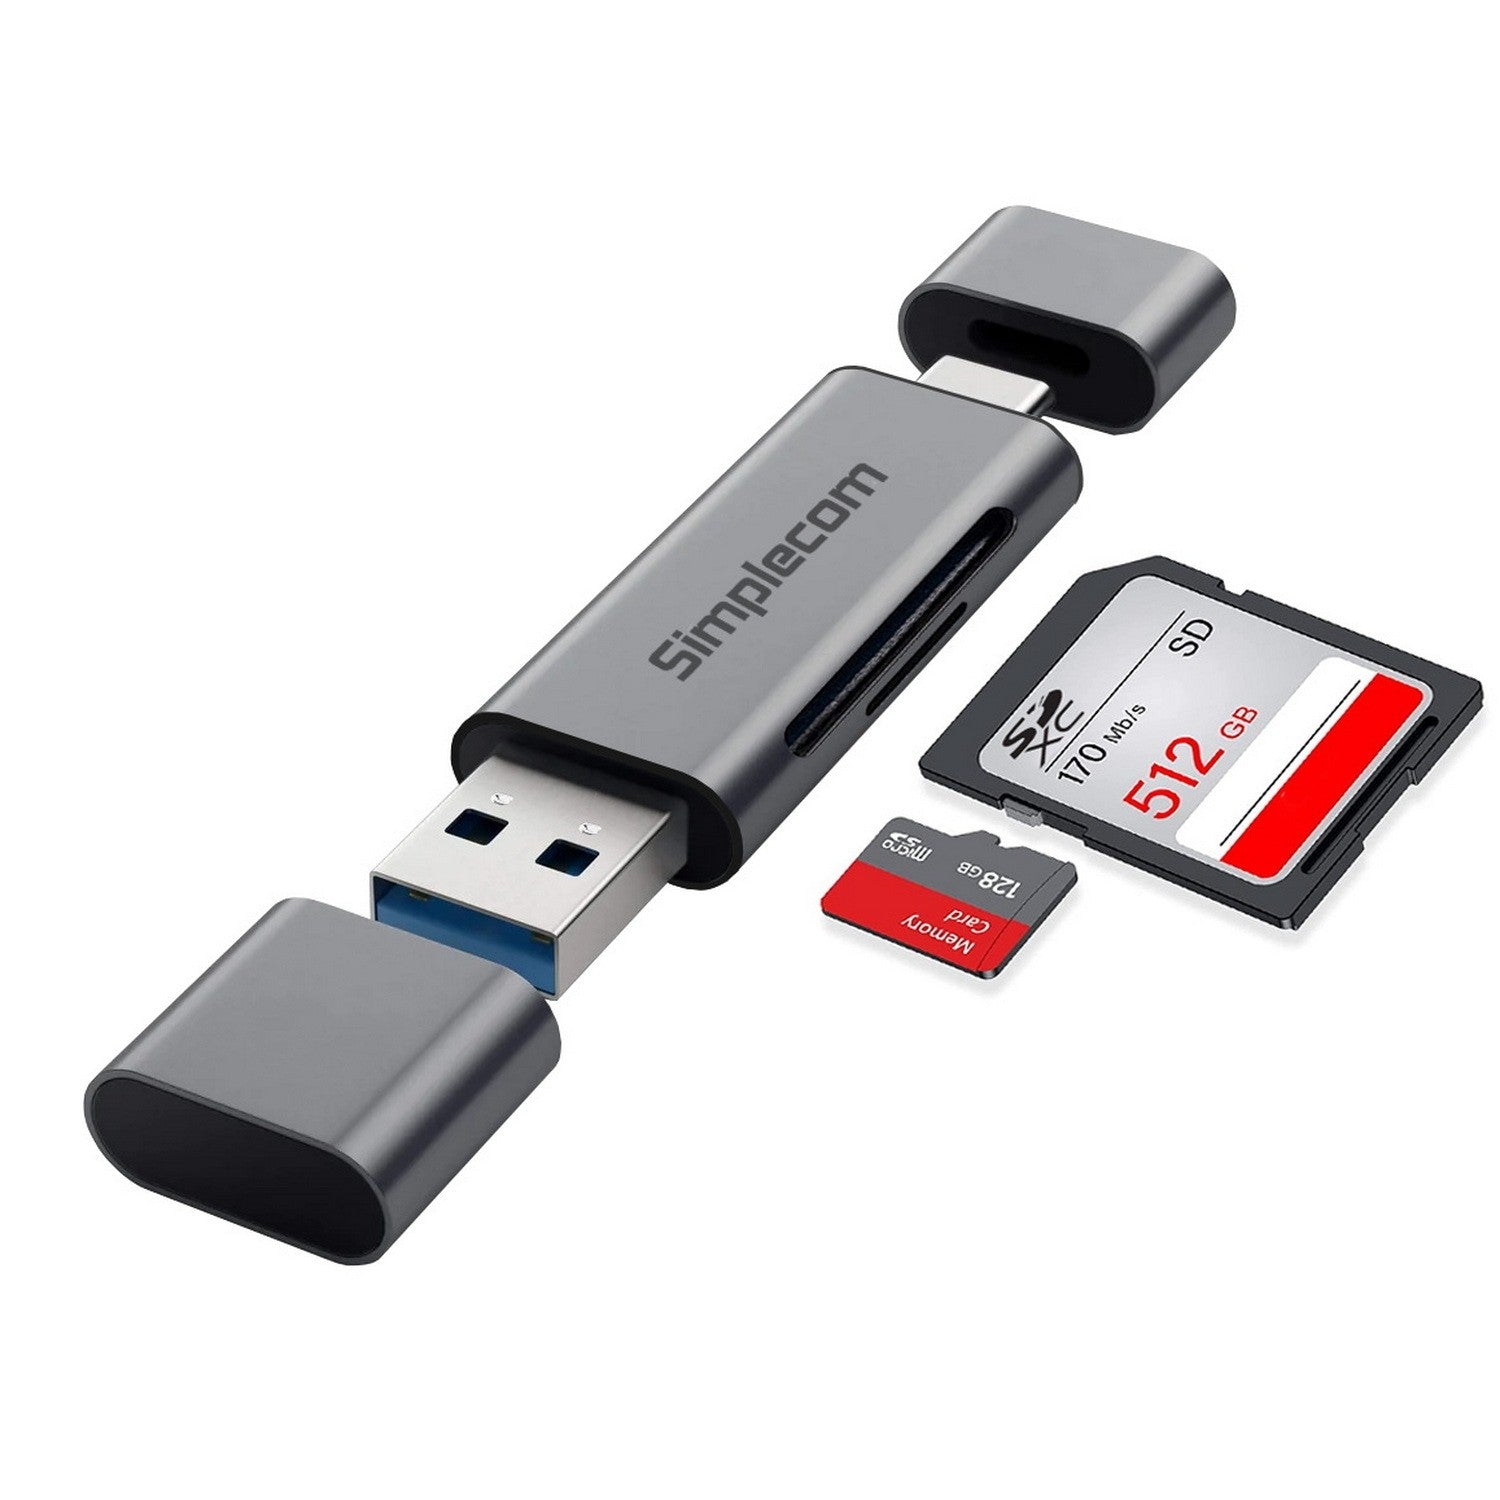 Simplecom 2 in 1 USB-C + USB 3.2 Gen1 Card Reader